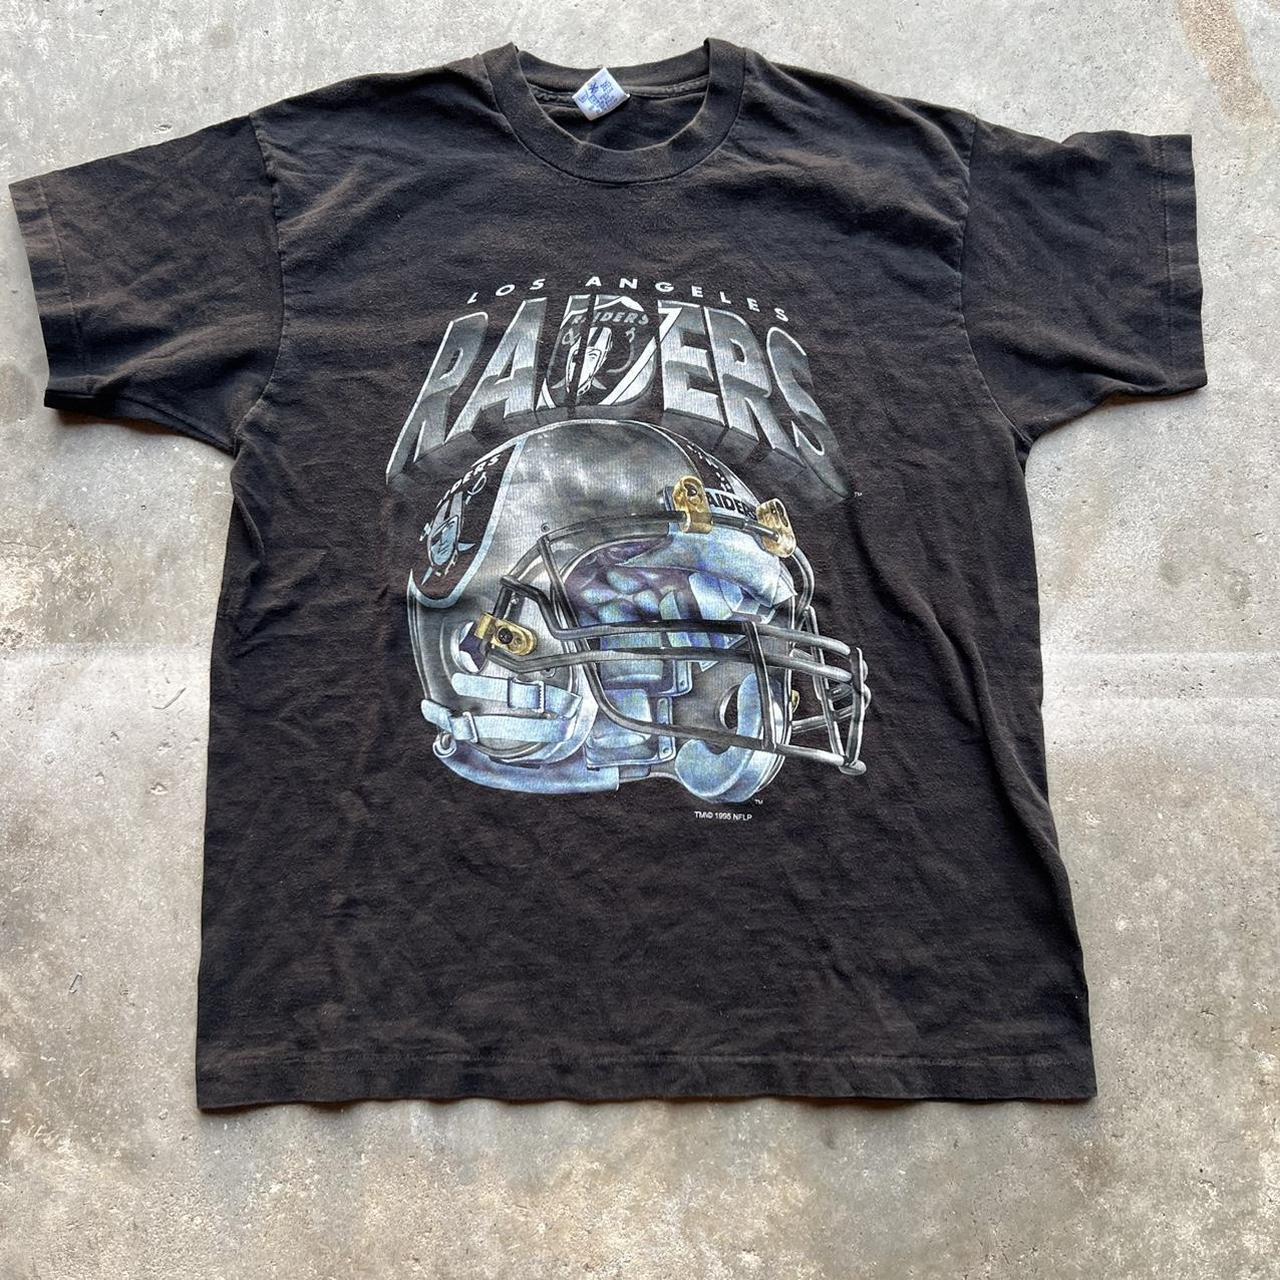 Vintage Los Angeles Raiders t-shirt Single stitch On - Depop